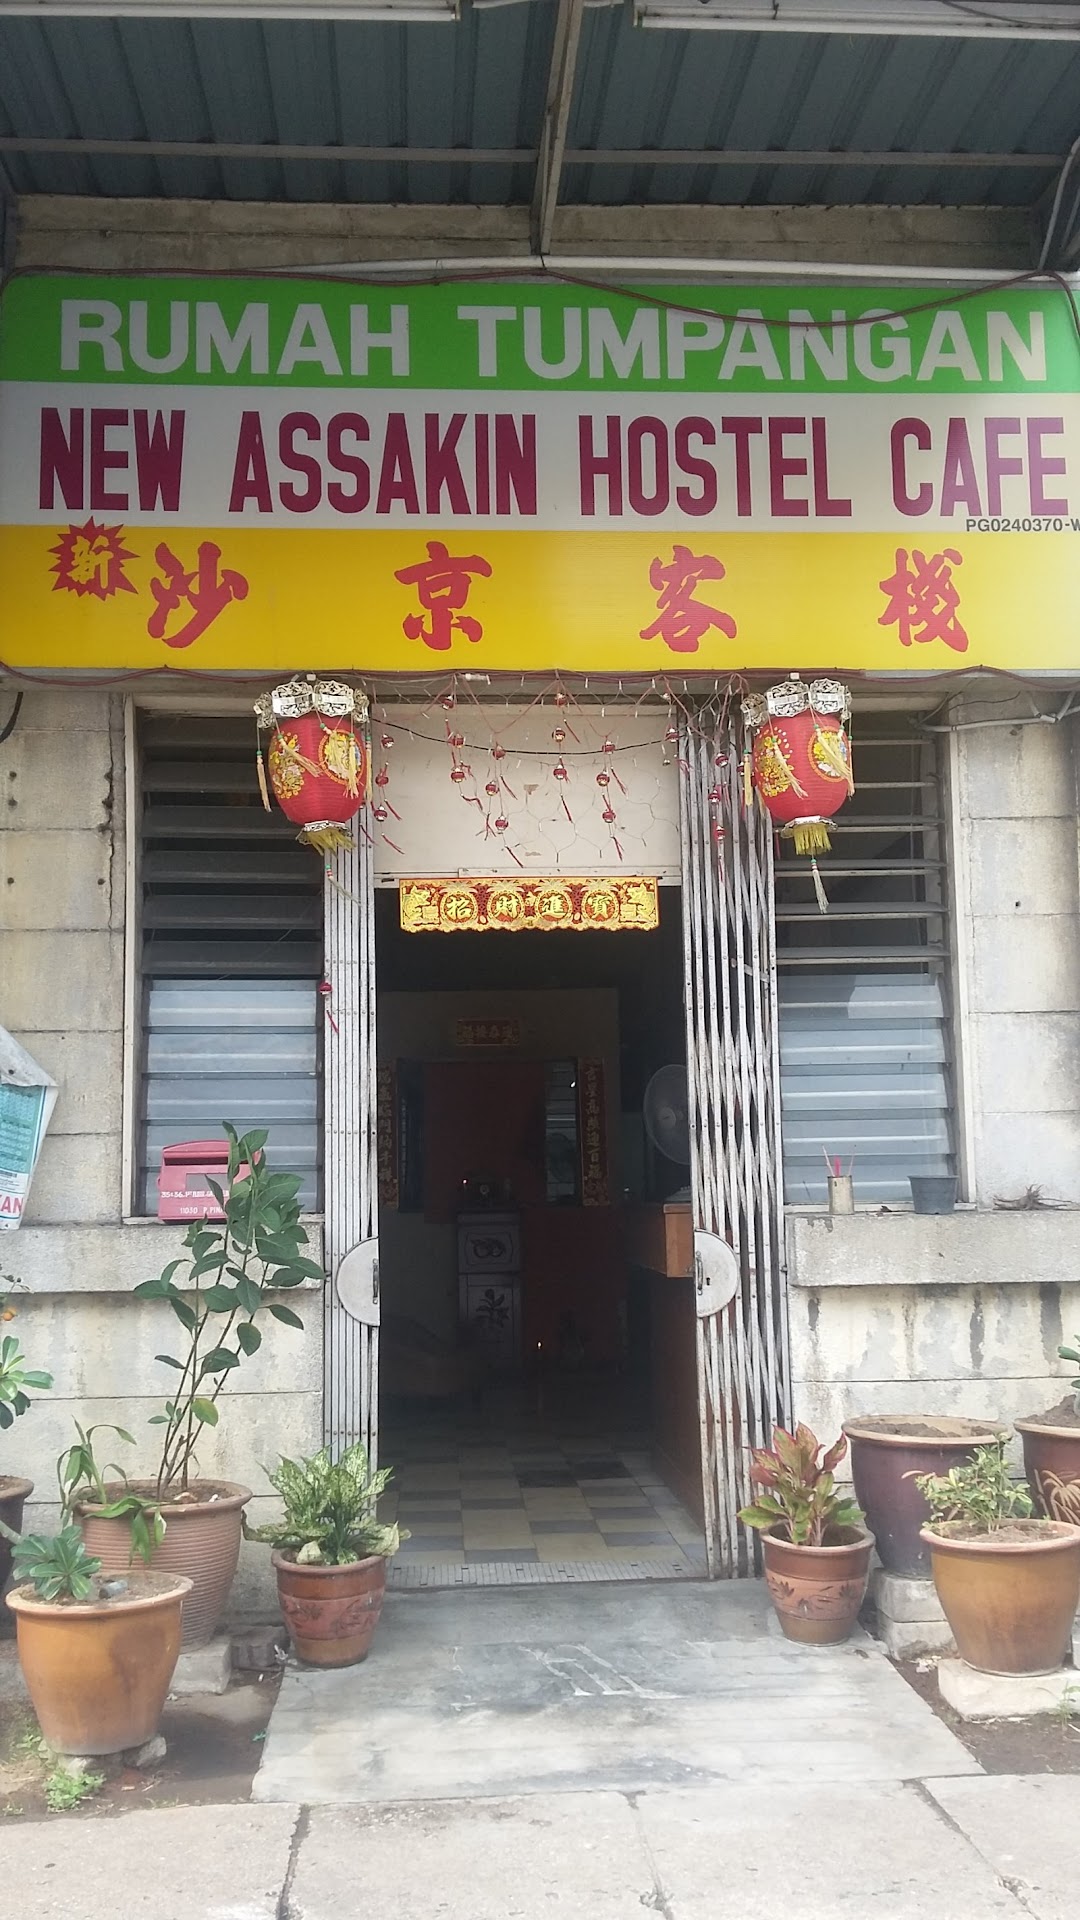 New Assakin Hostel Cafe